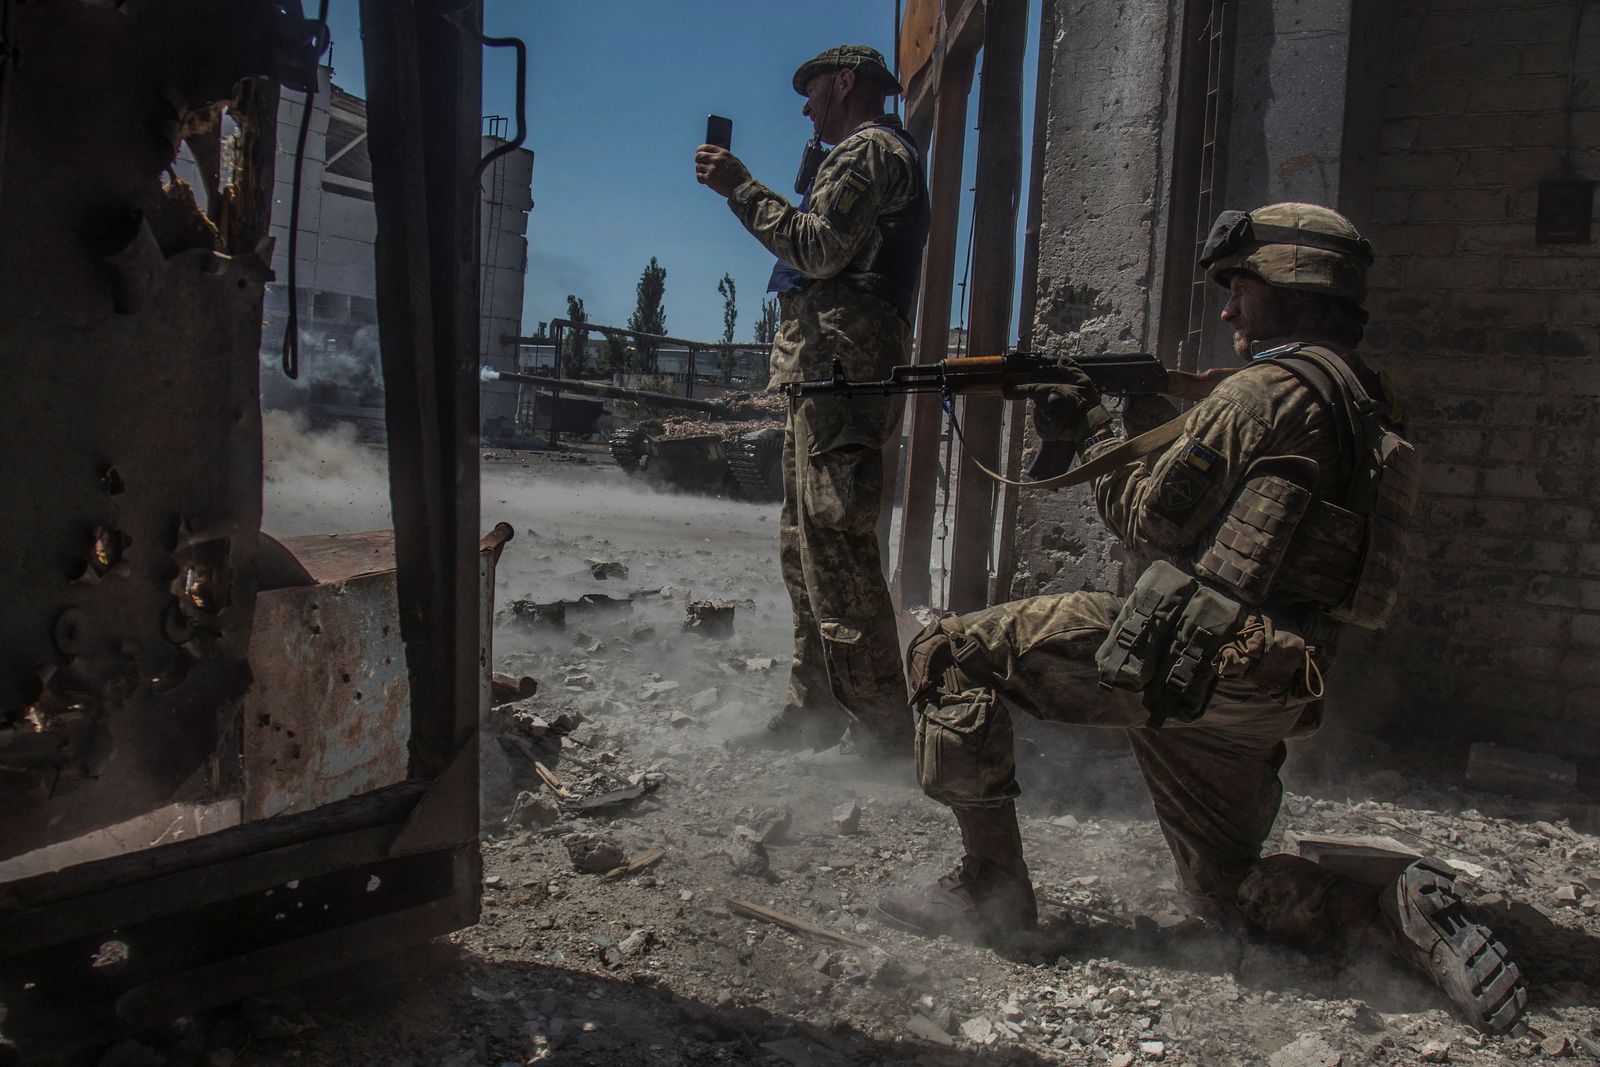 أفراد من الجيش الأوكراني في وضع الاستعداد بينما تطلق دبابة النار باتجاه القوات الروسية في المنطقة الصناعية لمدينة سيفيرودونتسك - 20 يونيو 2022 - REUTERS